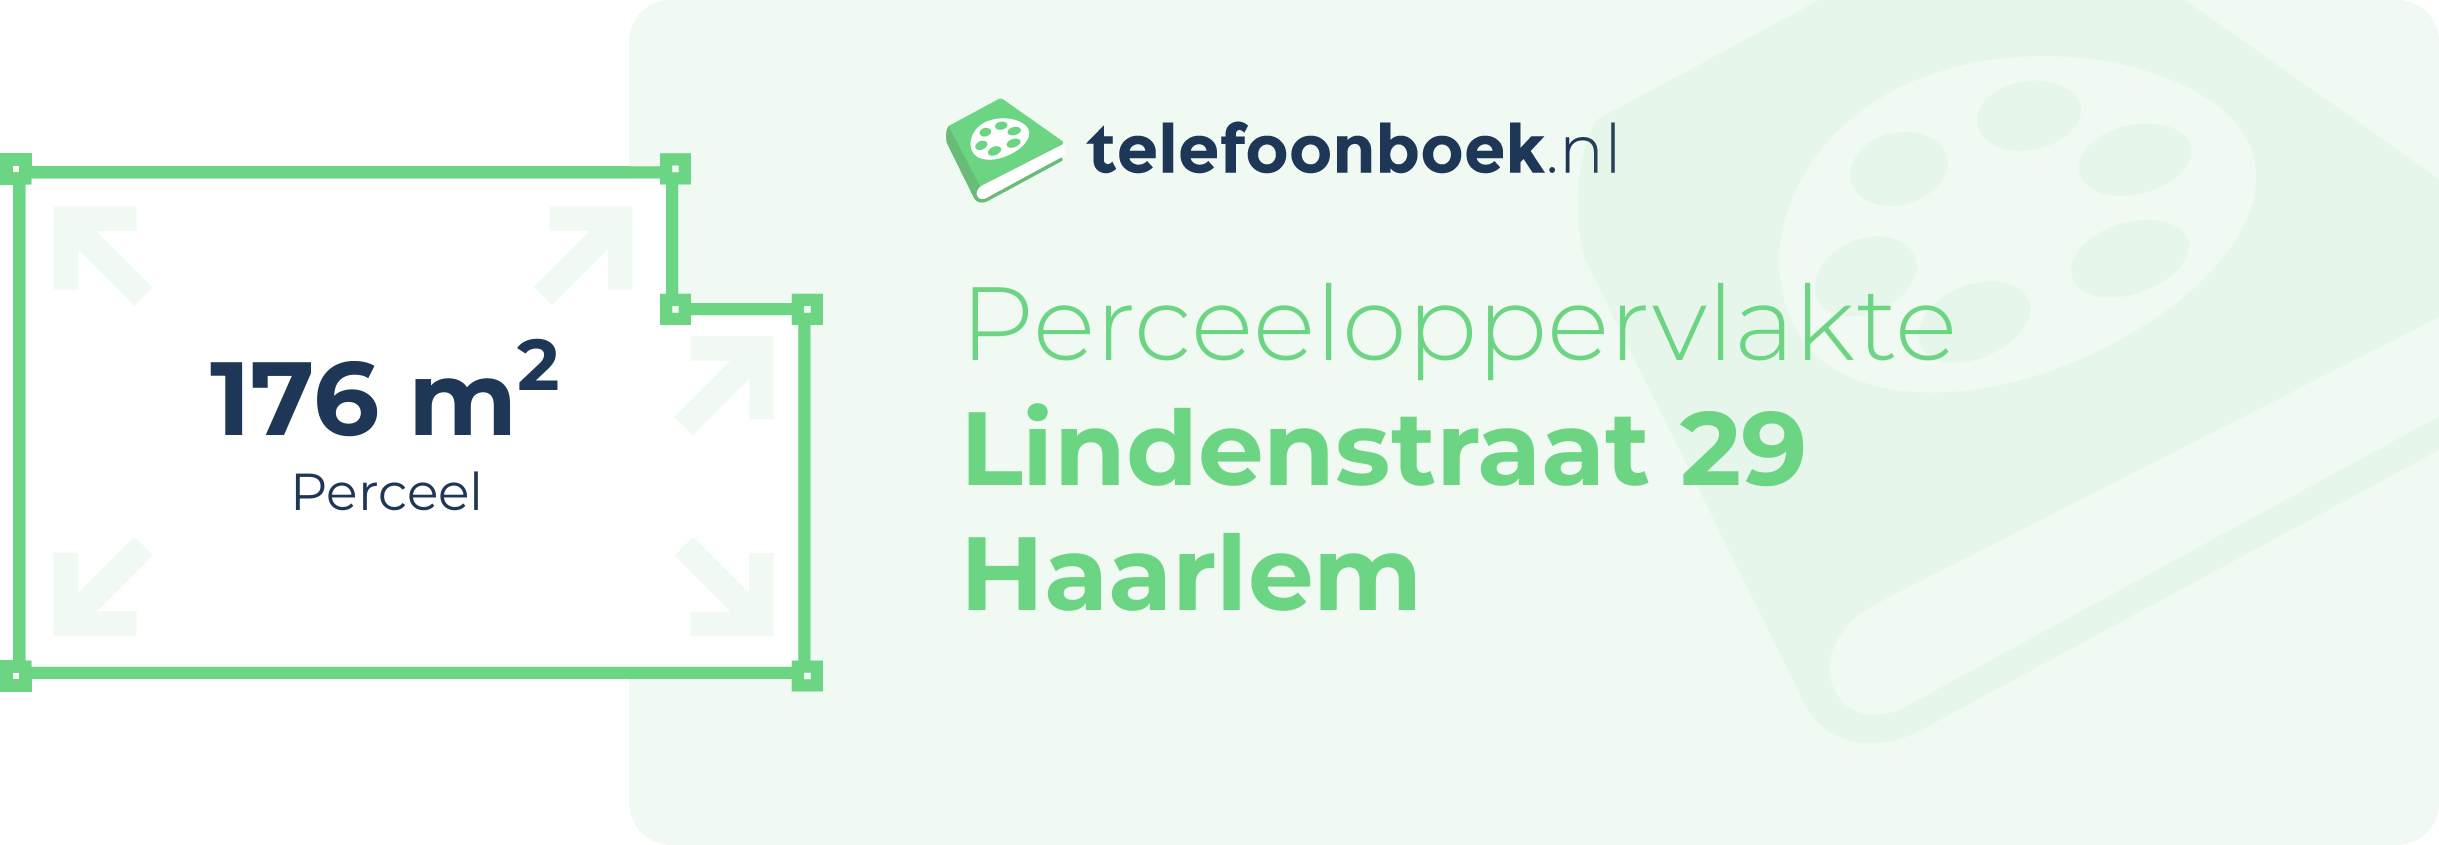 Perceeloppervlakte Lindenstraat 29 Haarlem